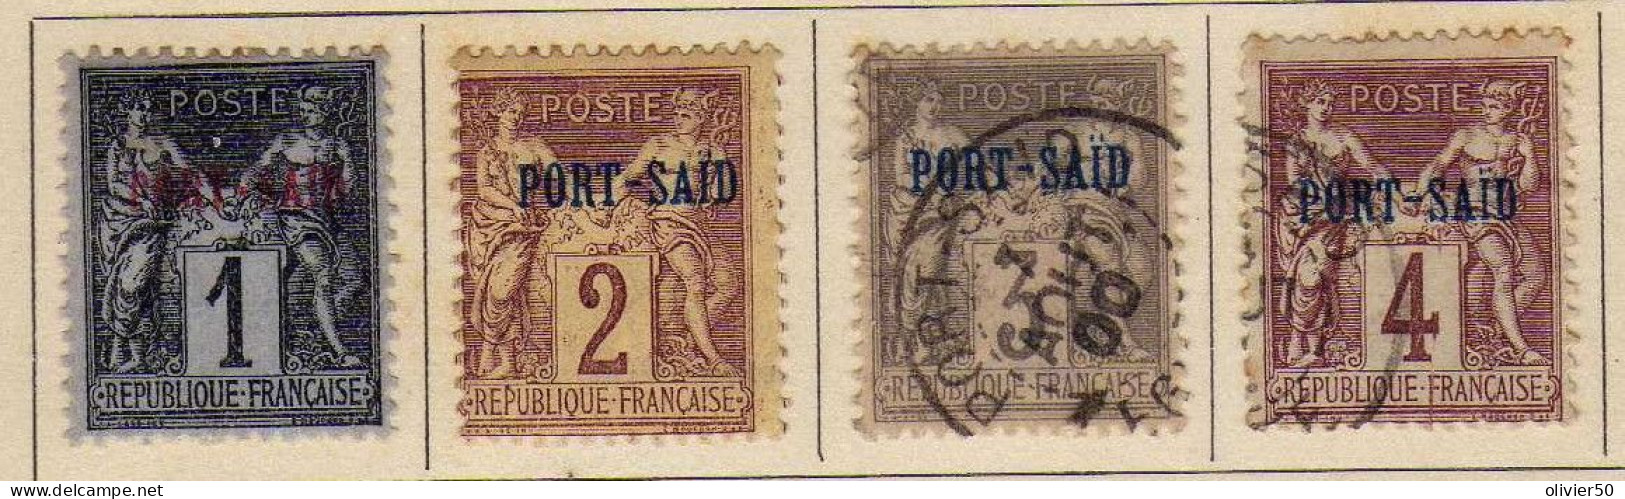 Port-Said (1899) -  1 C. - 2 C. 3 C. 4 C. Timbres De France Surcharges - Neufs* Et Obliteres - Ungebraucht